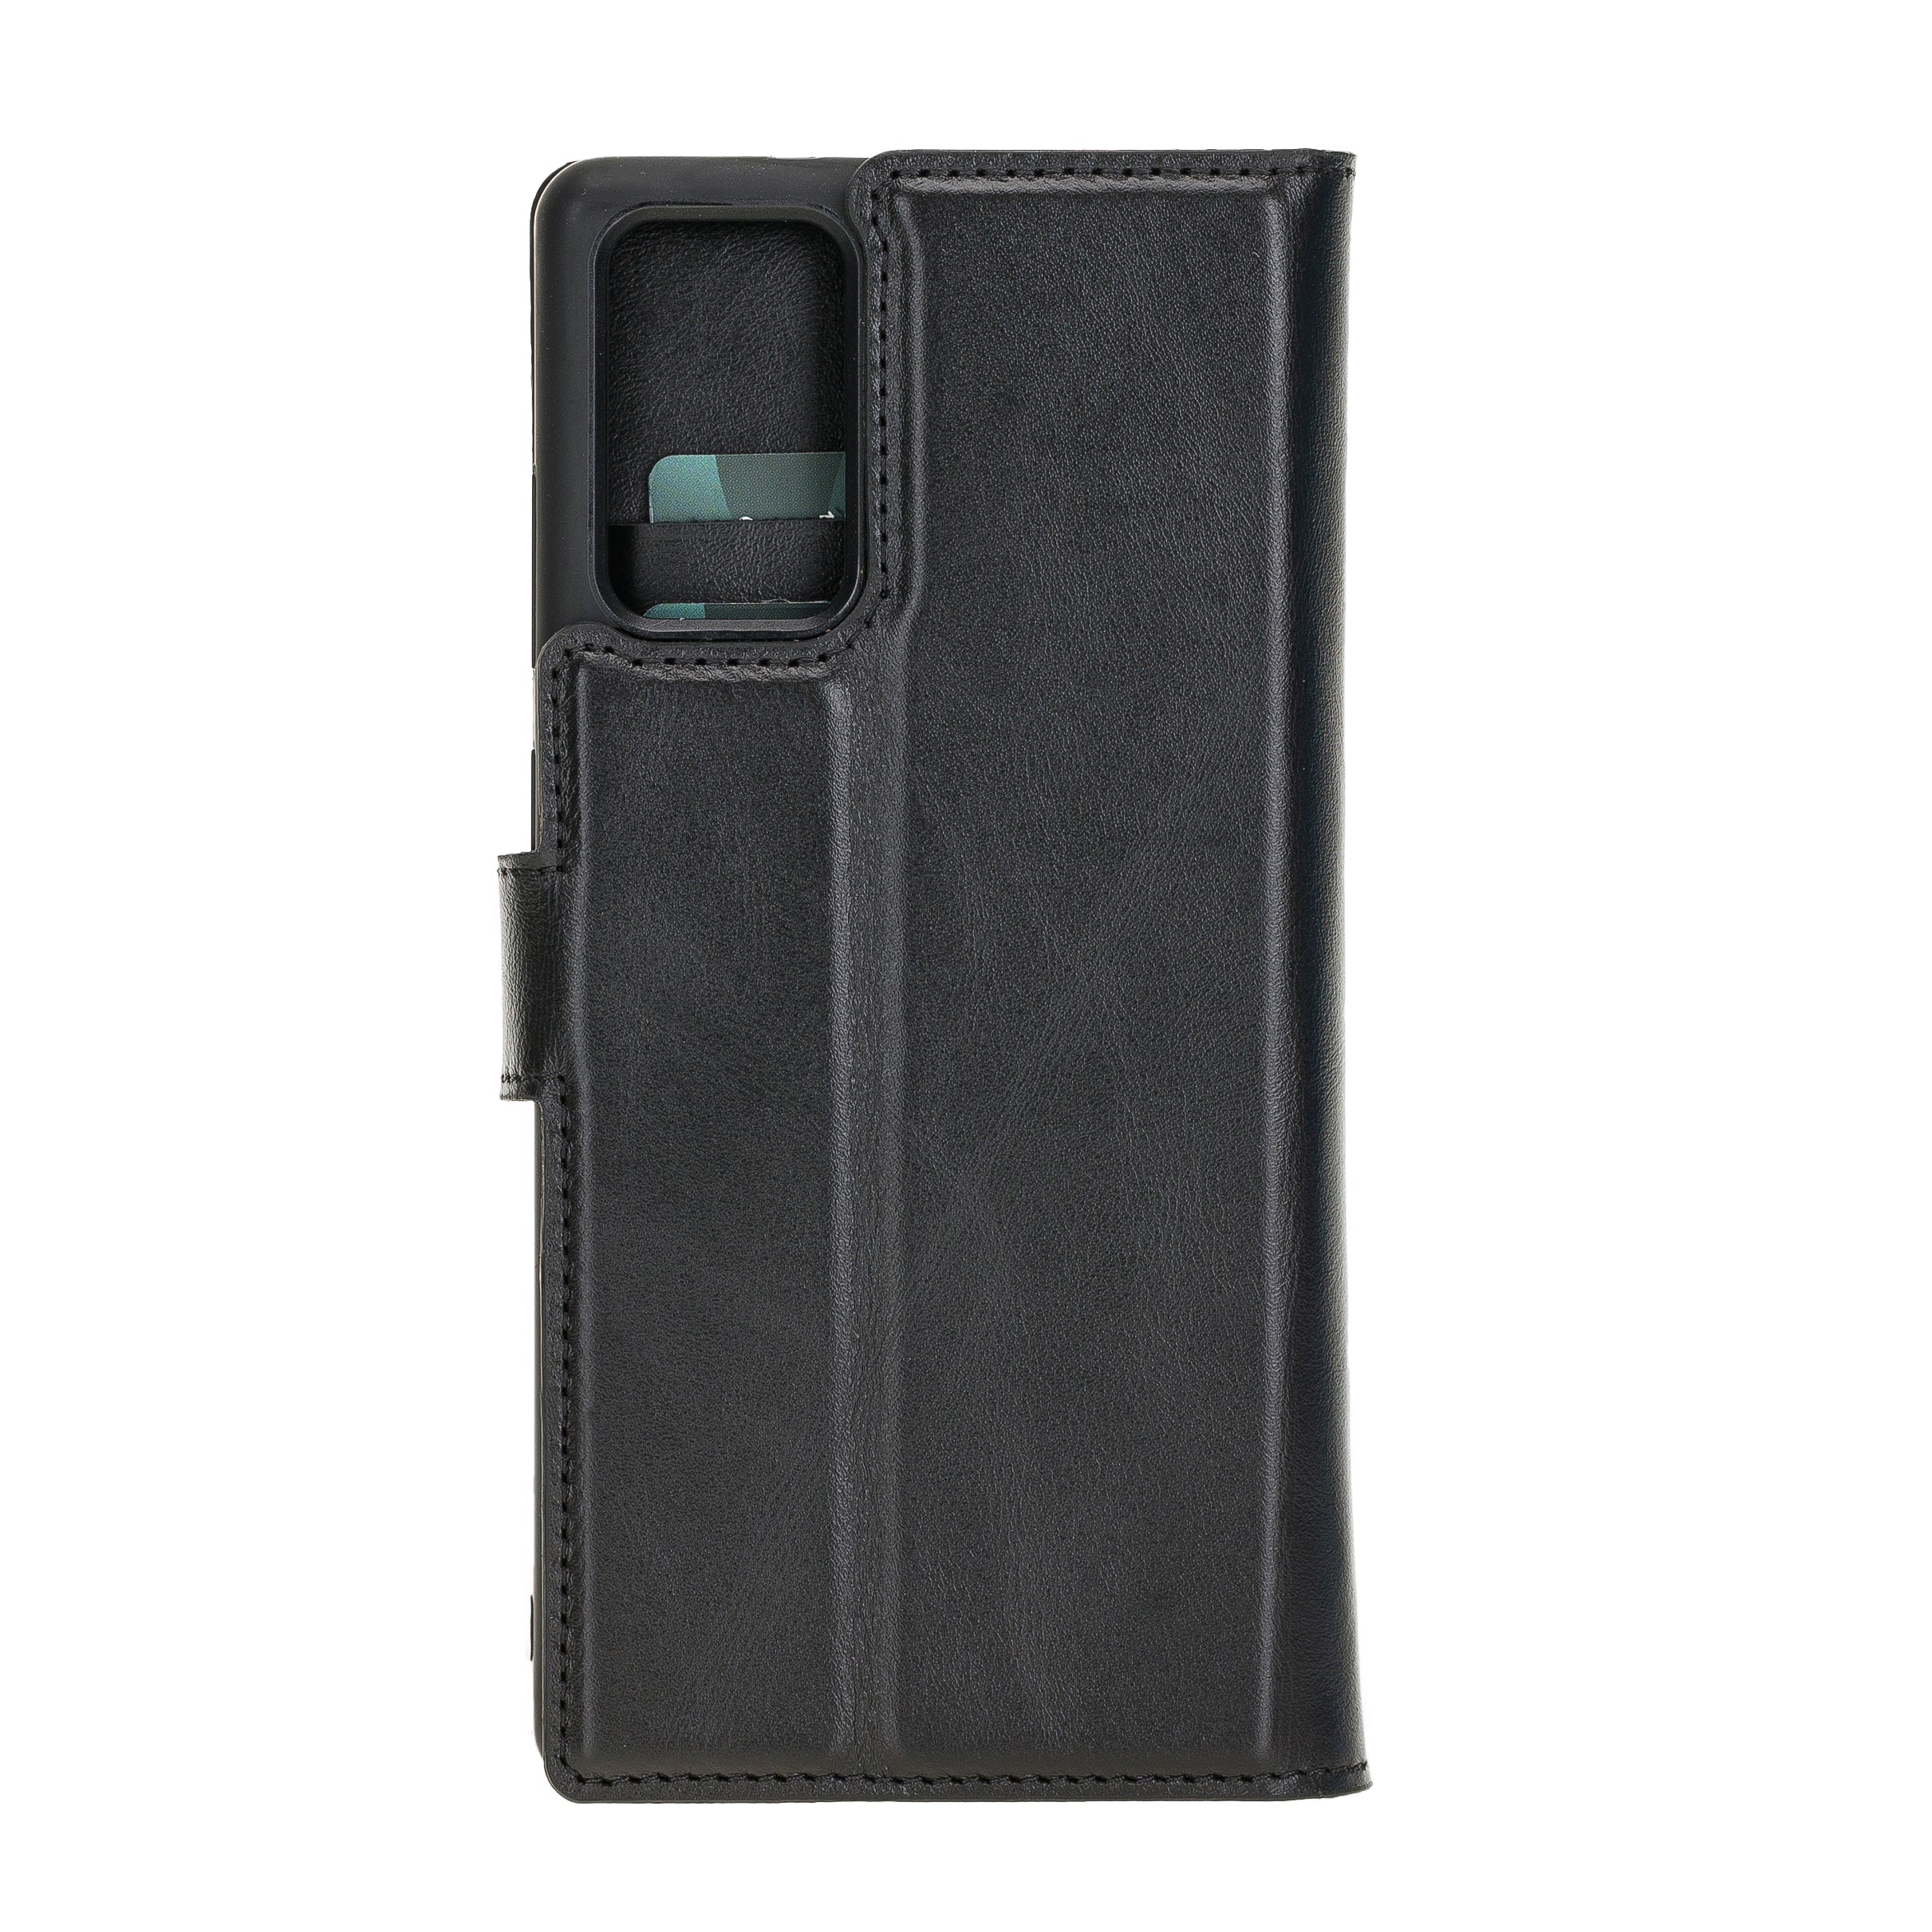 Samsung Galaxy Note 20 Uyumlu Deri Cüzdanlı Kılıf RST1 Siyah